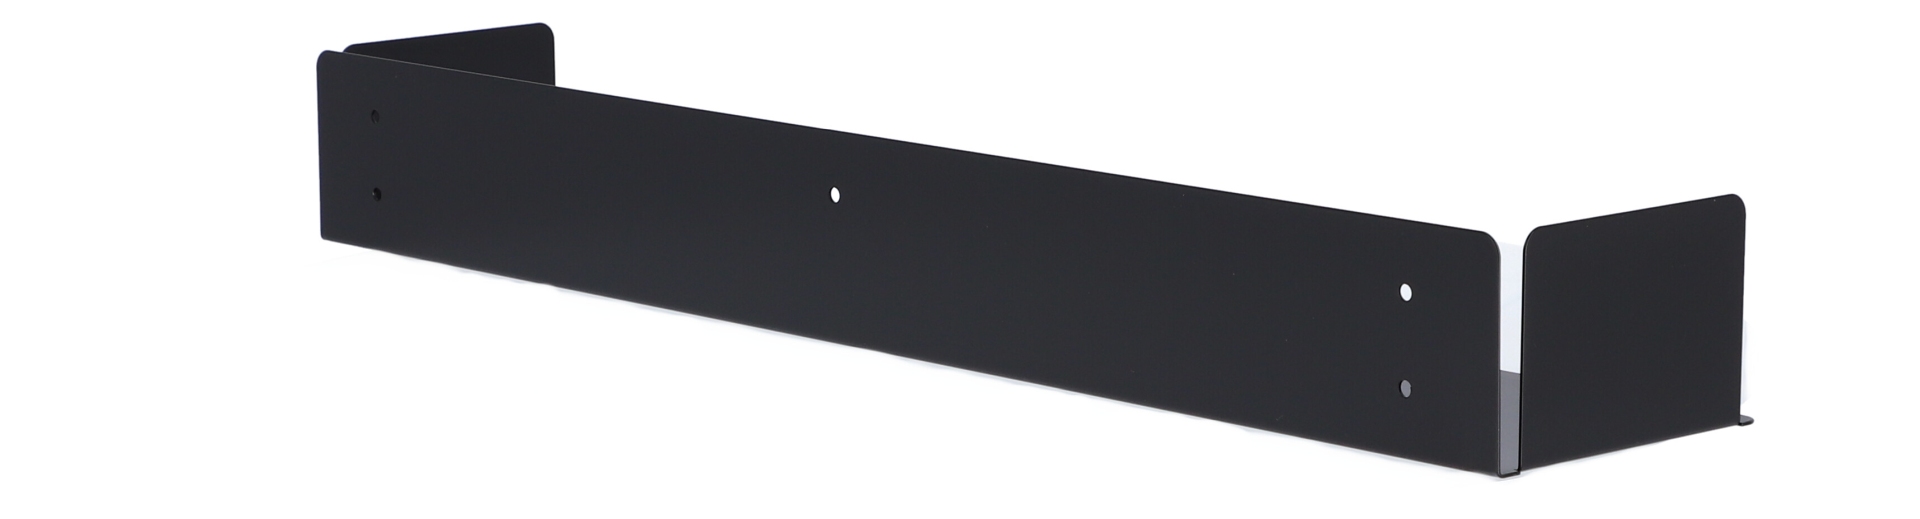 Das Wandregal Lyra wurde aus Metall gefertigt und hat einen schwarzen Farbton. Die Breite beträgt 80 cm. Das Design ist schlicht aber auch modern. Das Regal ist ein Produkt der Marke Jan Kurtz.